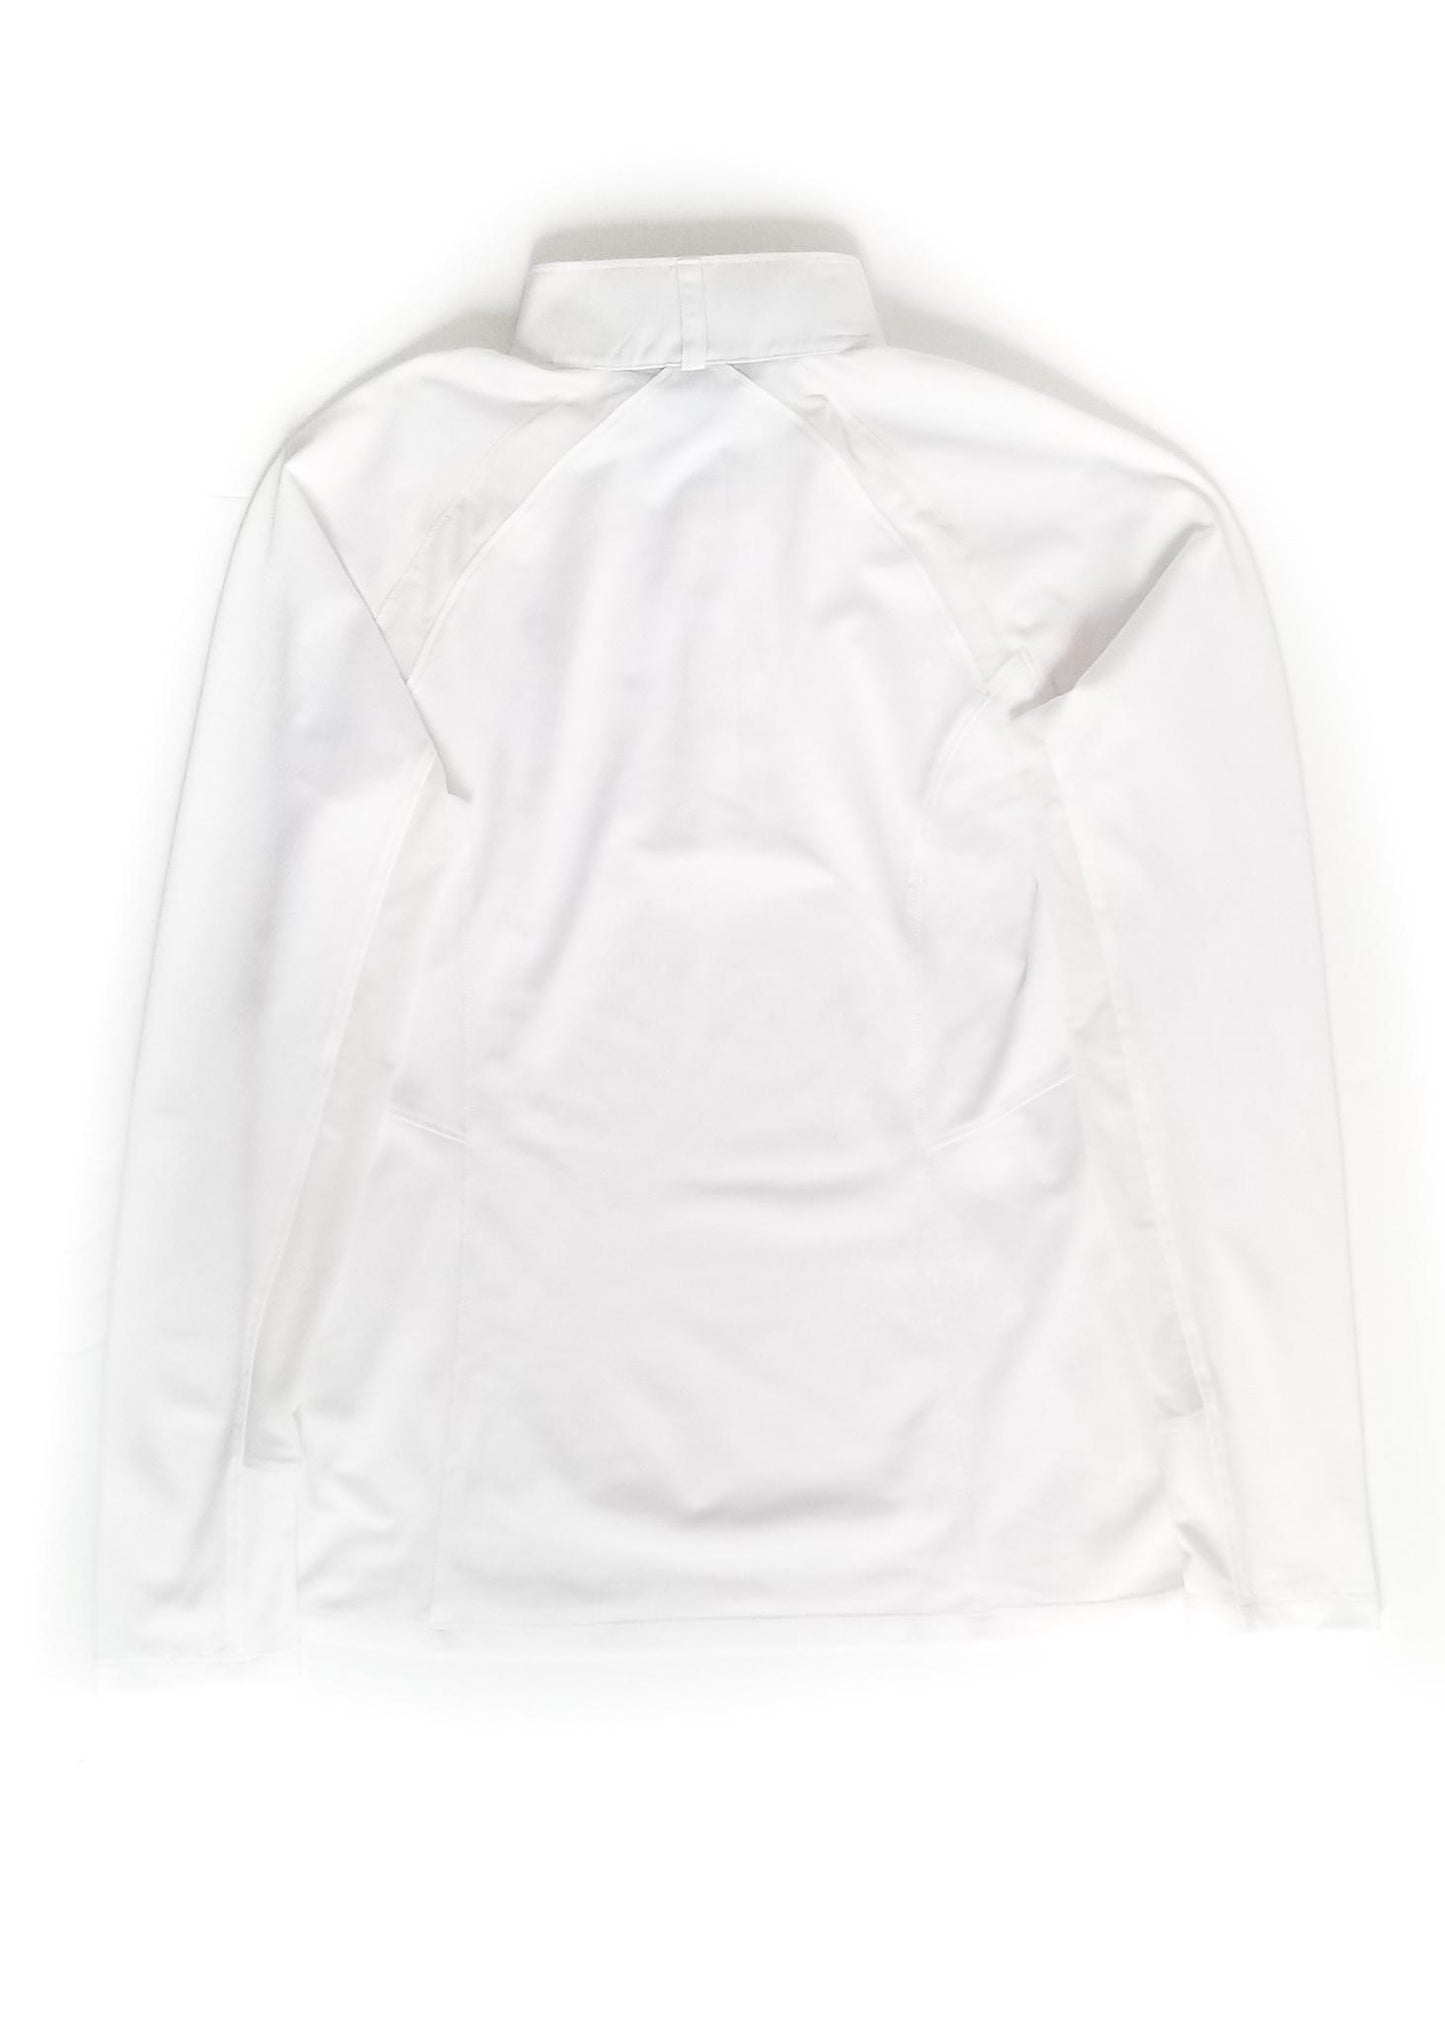 Ariat Sunstopper 2.0 Ladies Long Sleeve Show Shirt - White - Medium